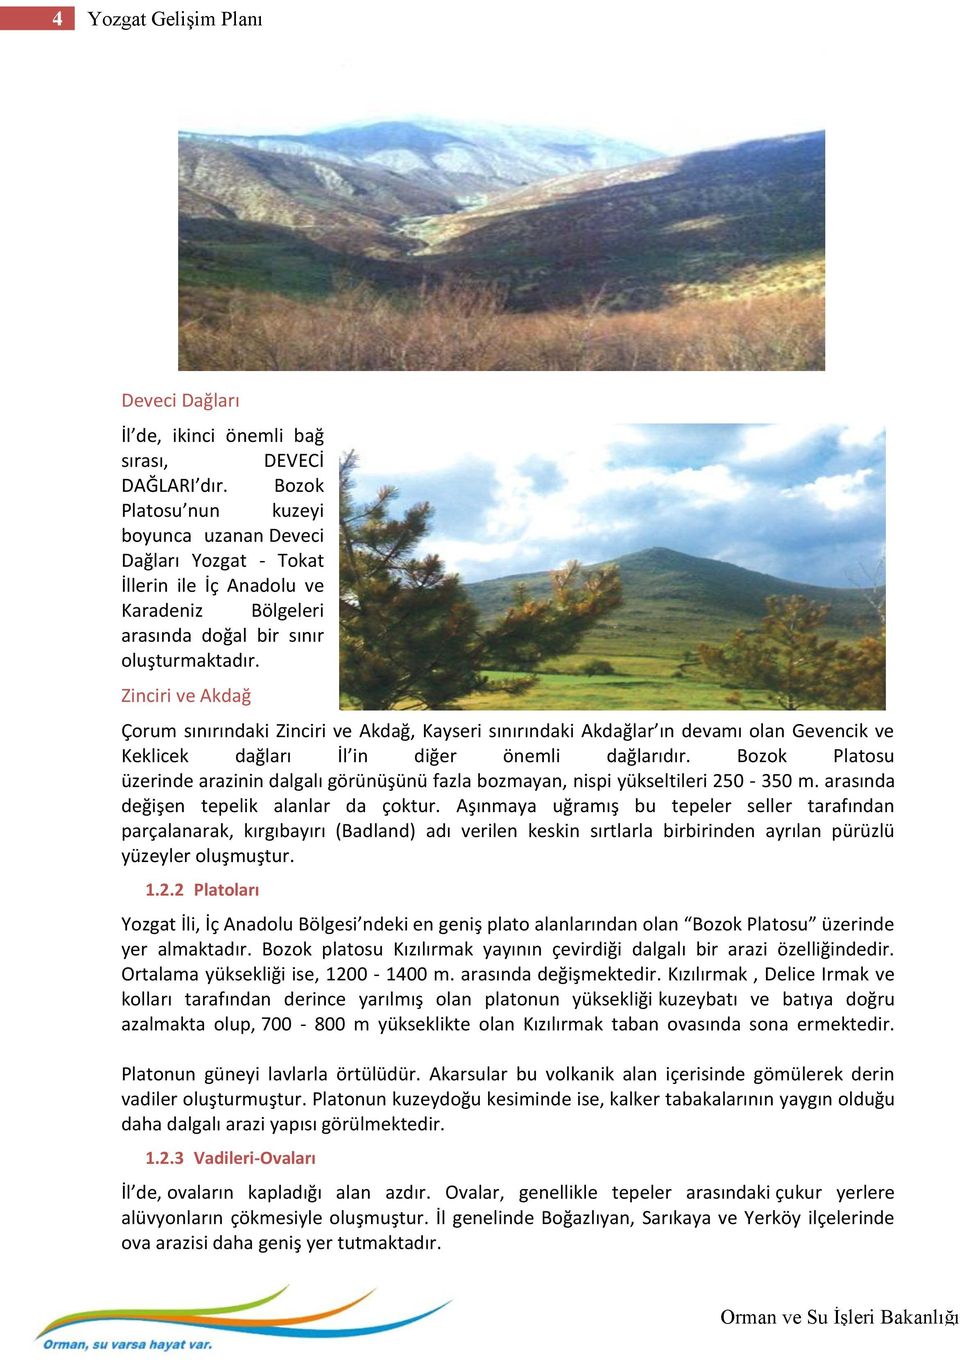 Zinciri ve Akdağ Çorum sınırındaki Zinciri ve Akdağ, Kayseri sınırındaki Akdağlar ın devamı olan Gevencik ve Keklicek dağları İl in diğer önemli dağlarıdır.